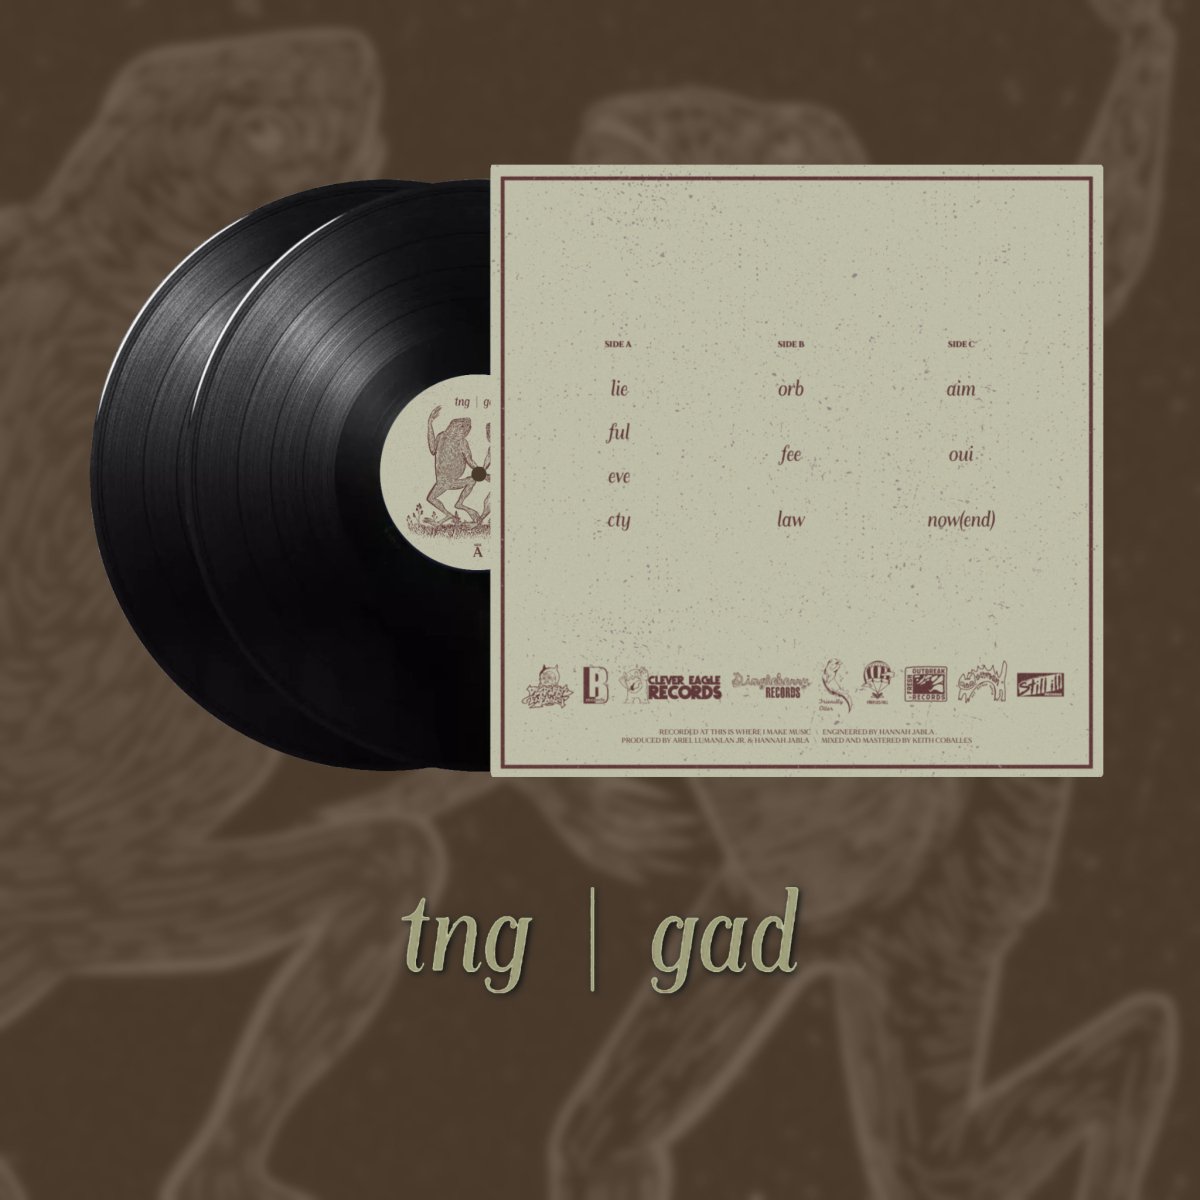 tng  - gad [Vinyl]